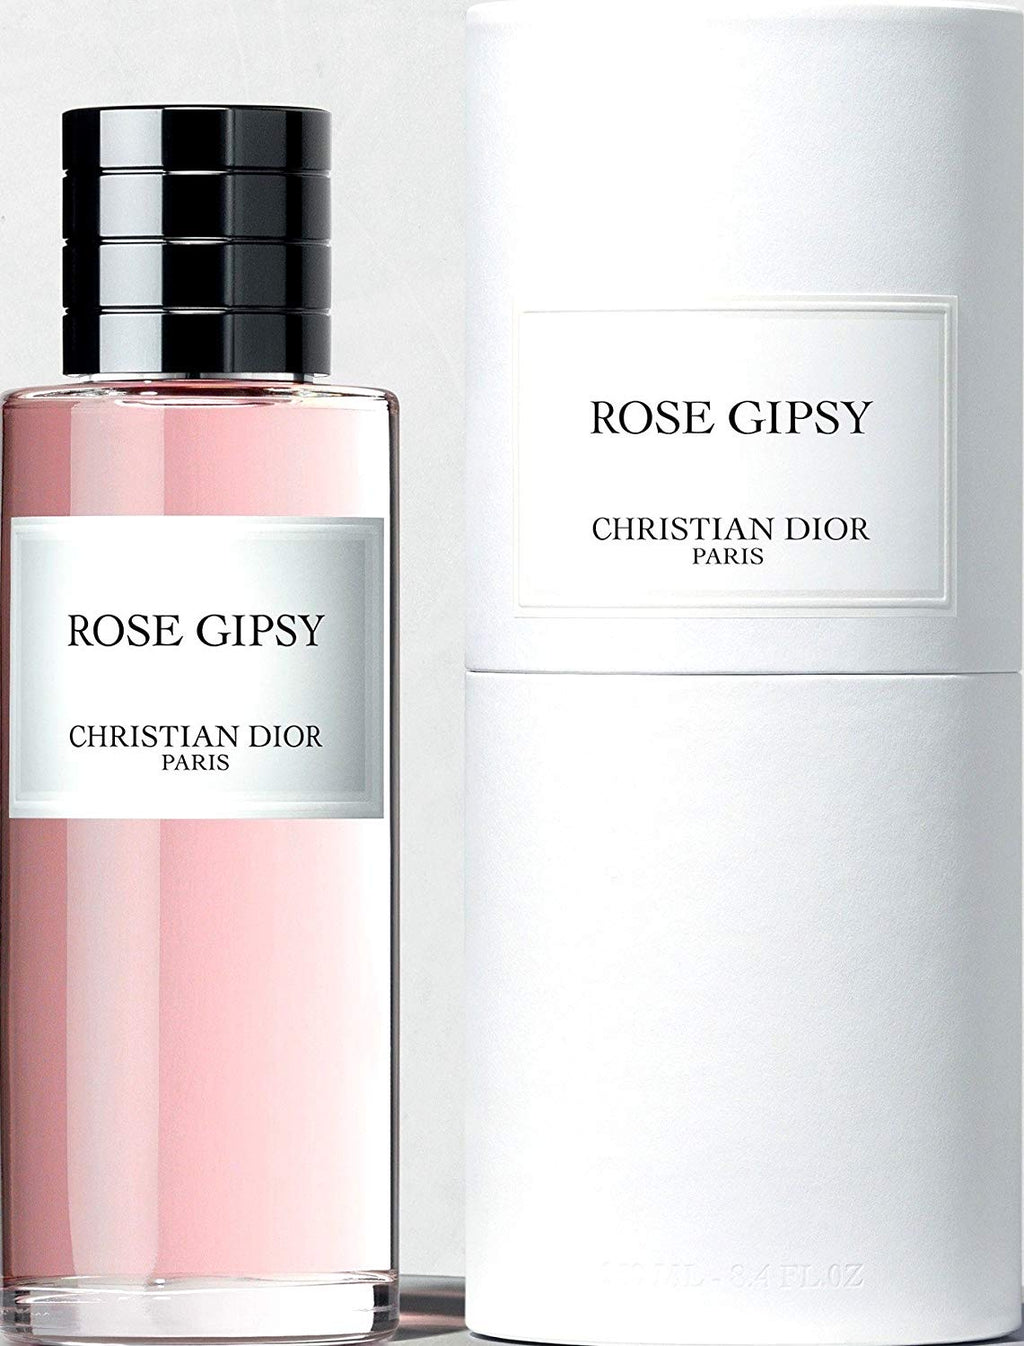 Rose Gipsy - aoperfume